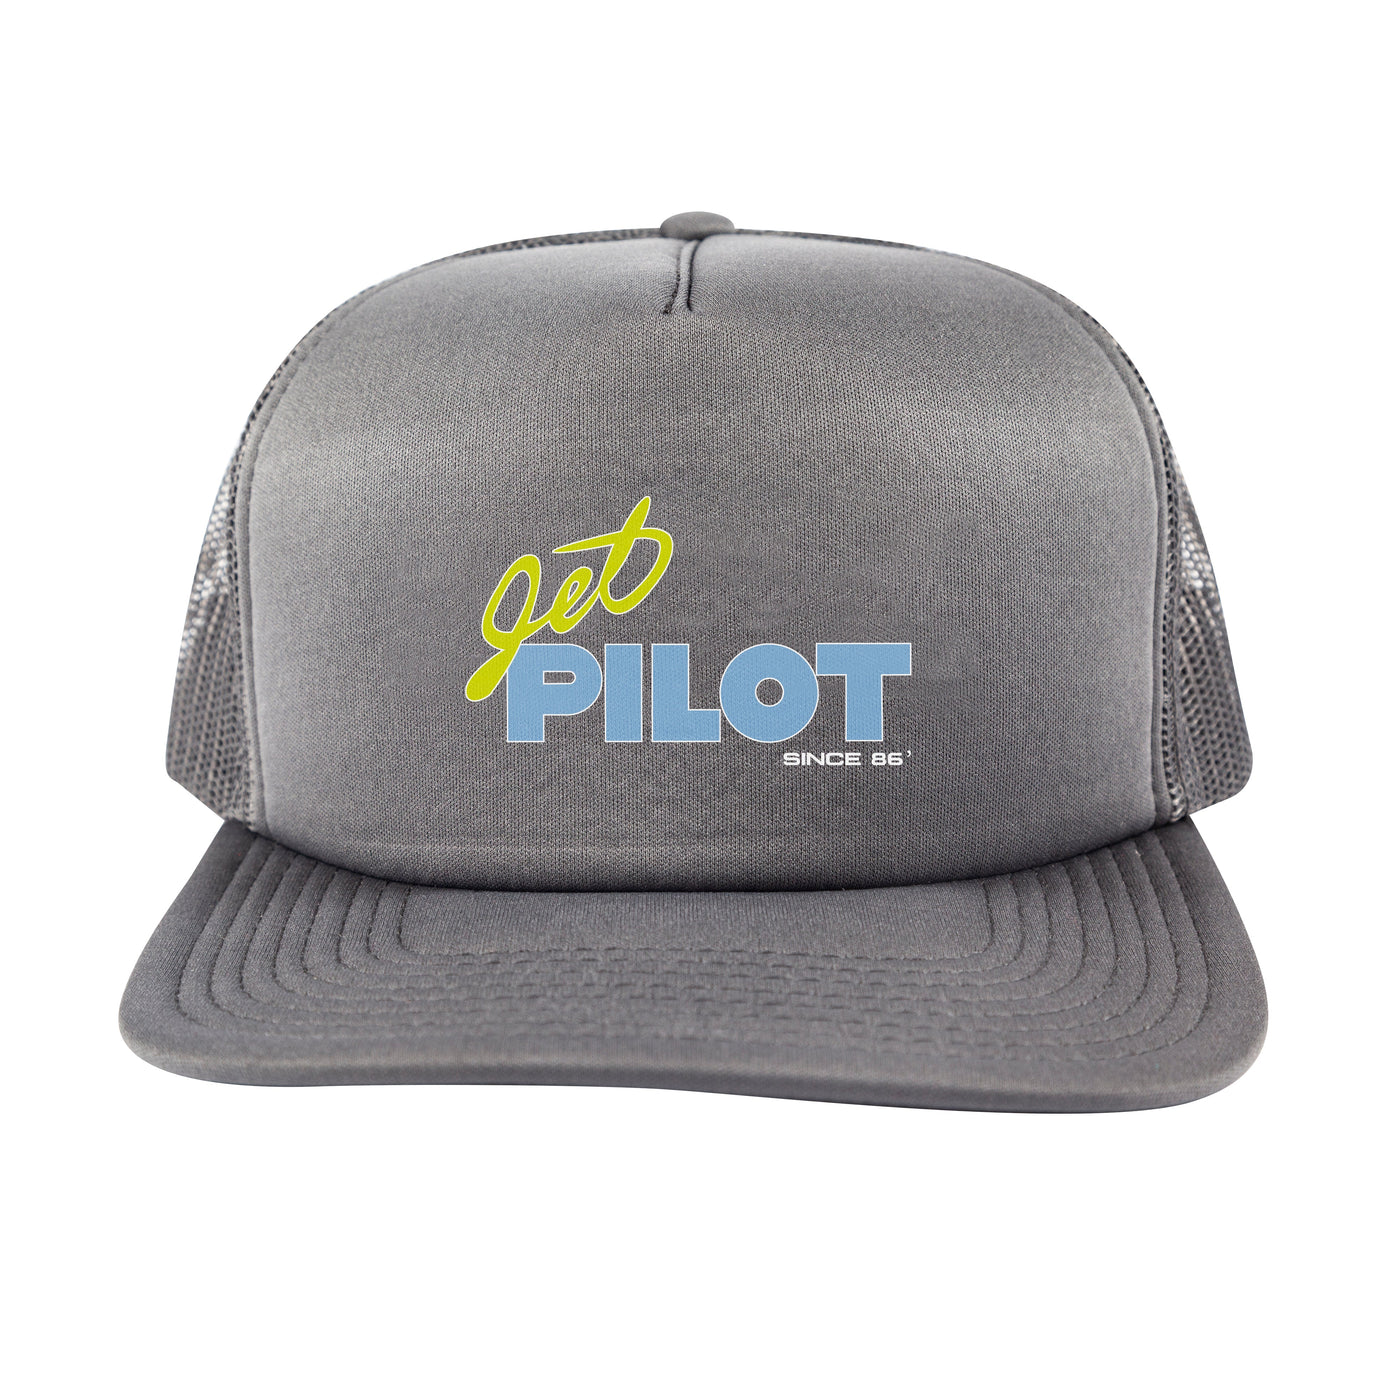 JetPilot Vintage Class Hat